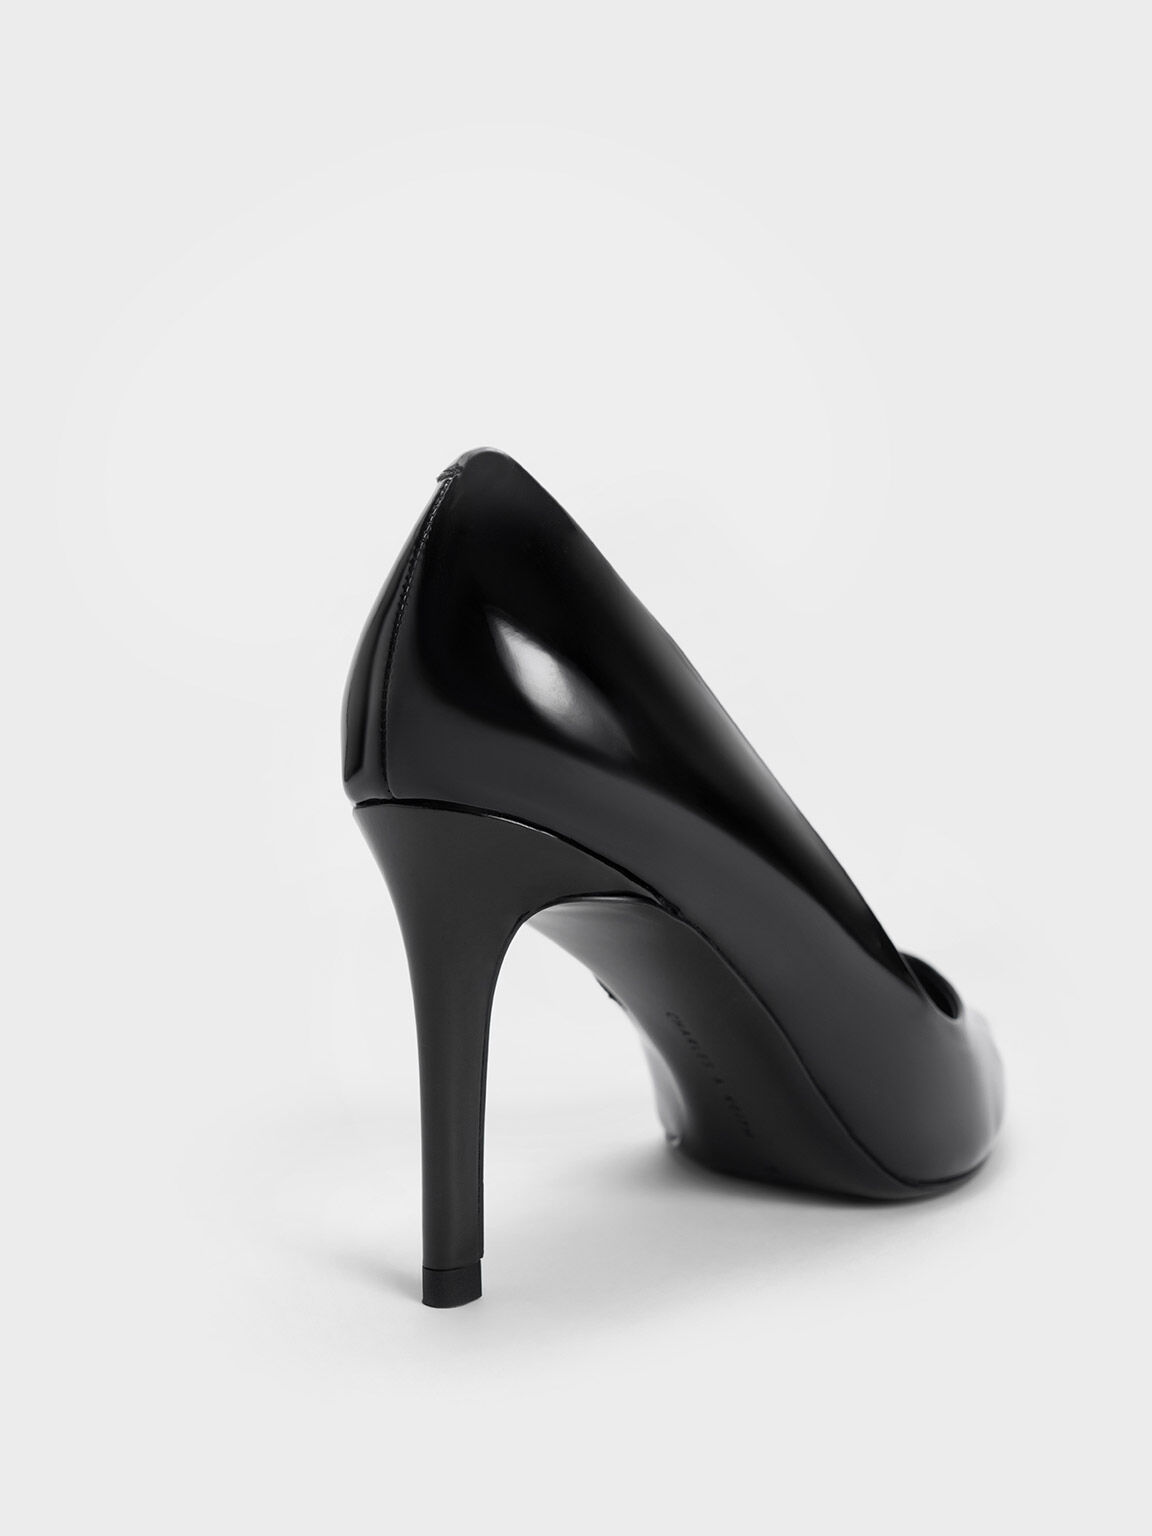 Sepatu Pumps Stiletto Patent Pointed Toe, Black Patent, hi-res